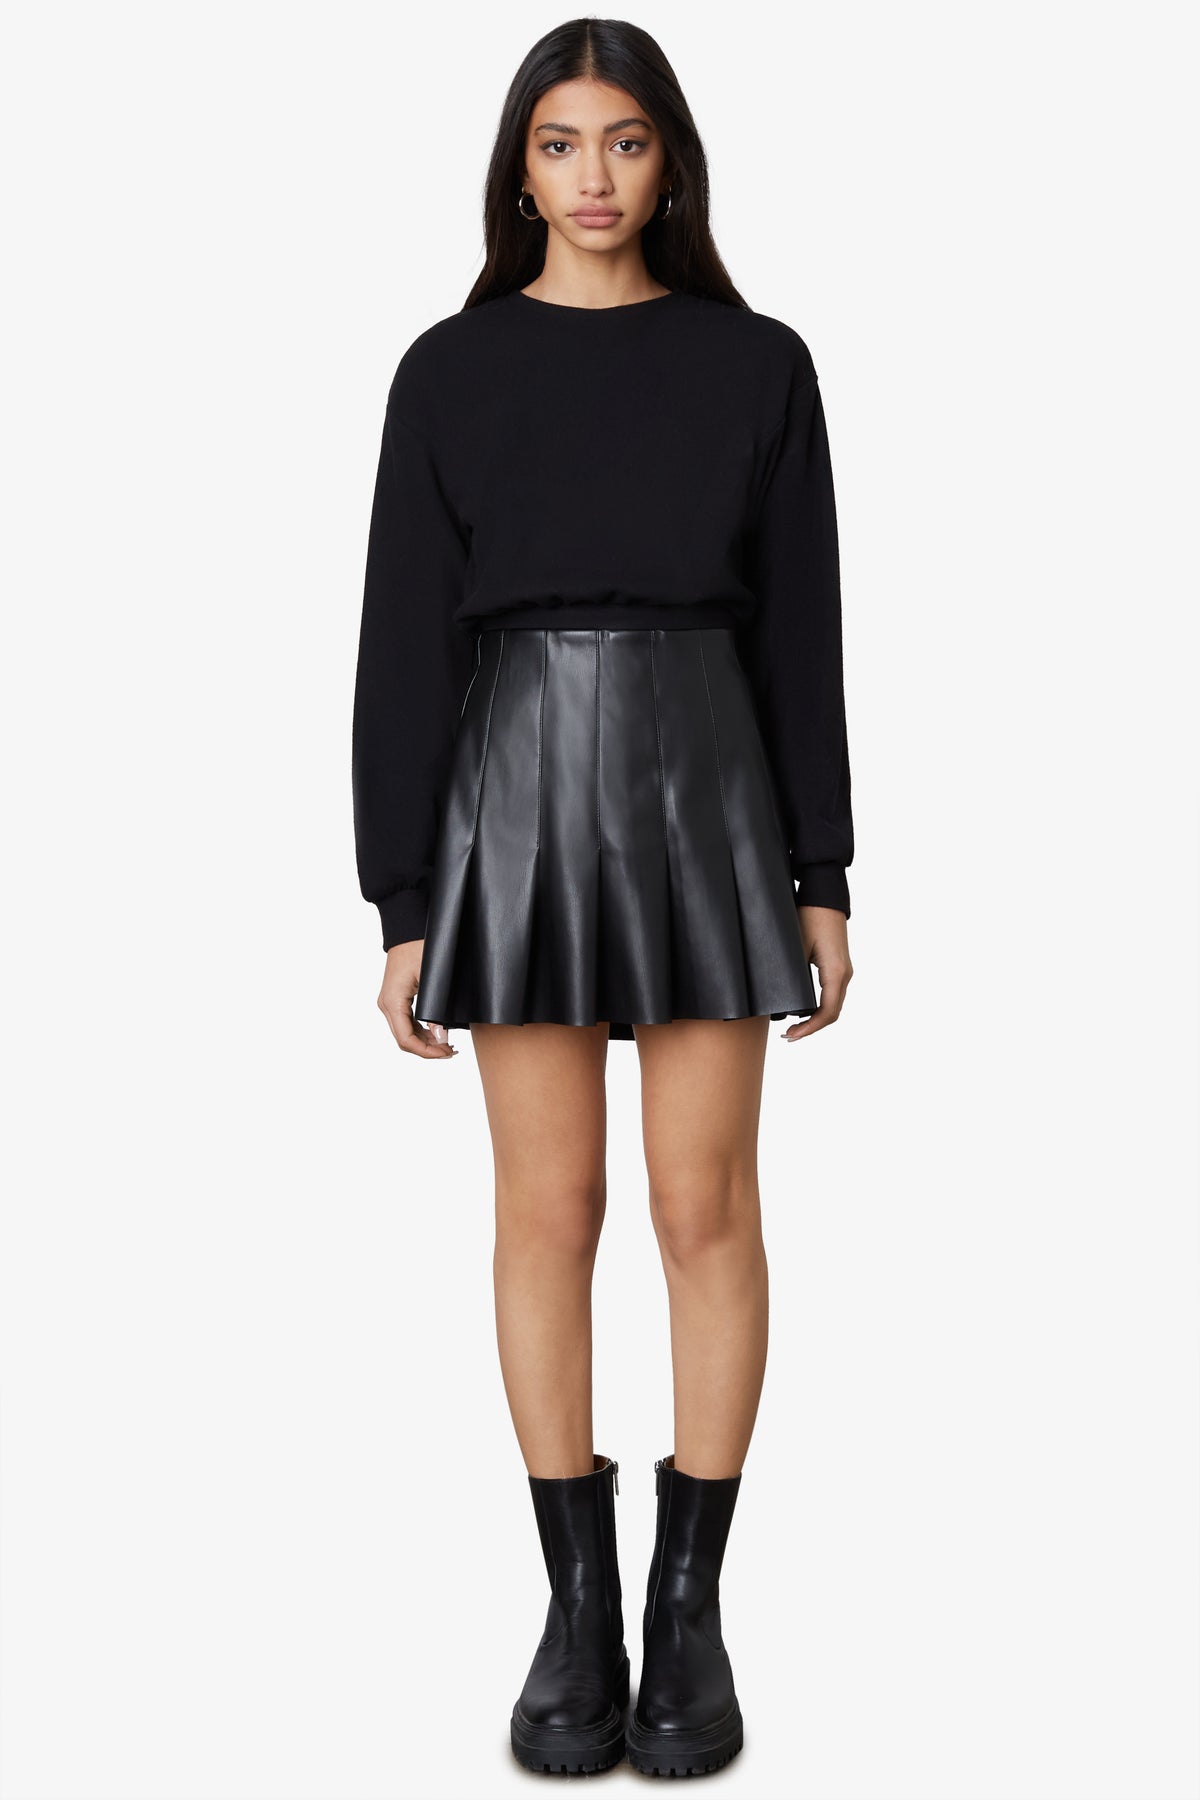 Vegan Leather Smocked Skater Skirt - Black